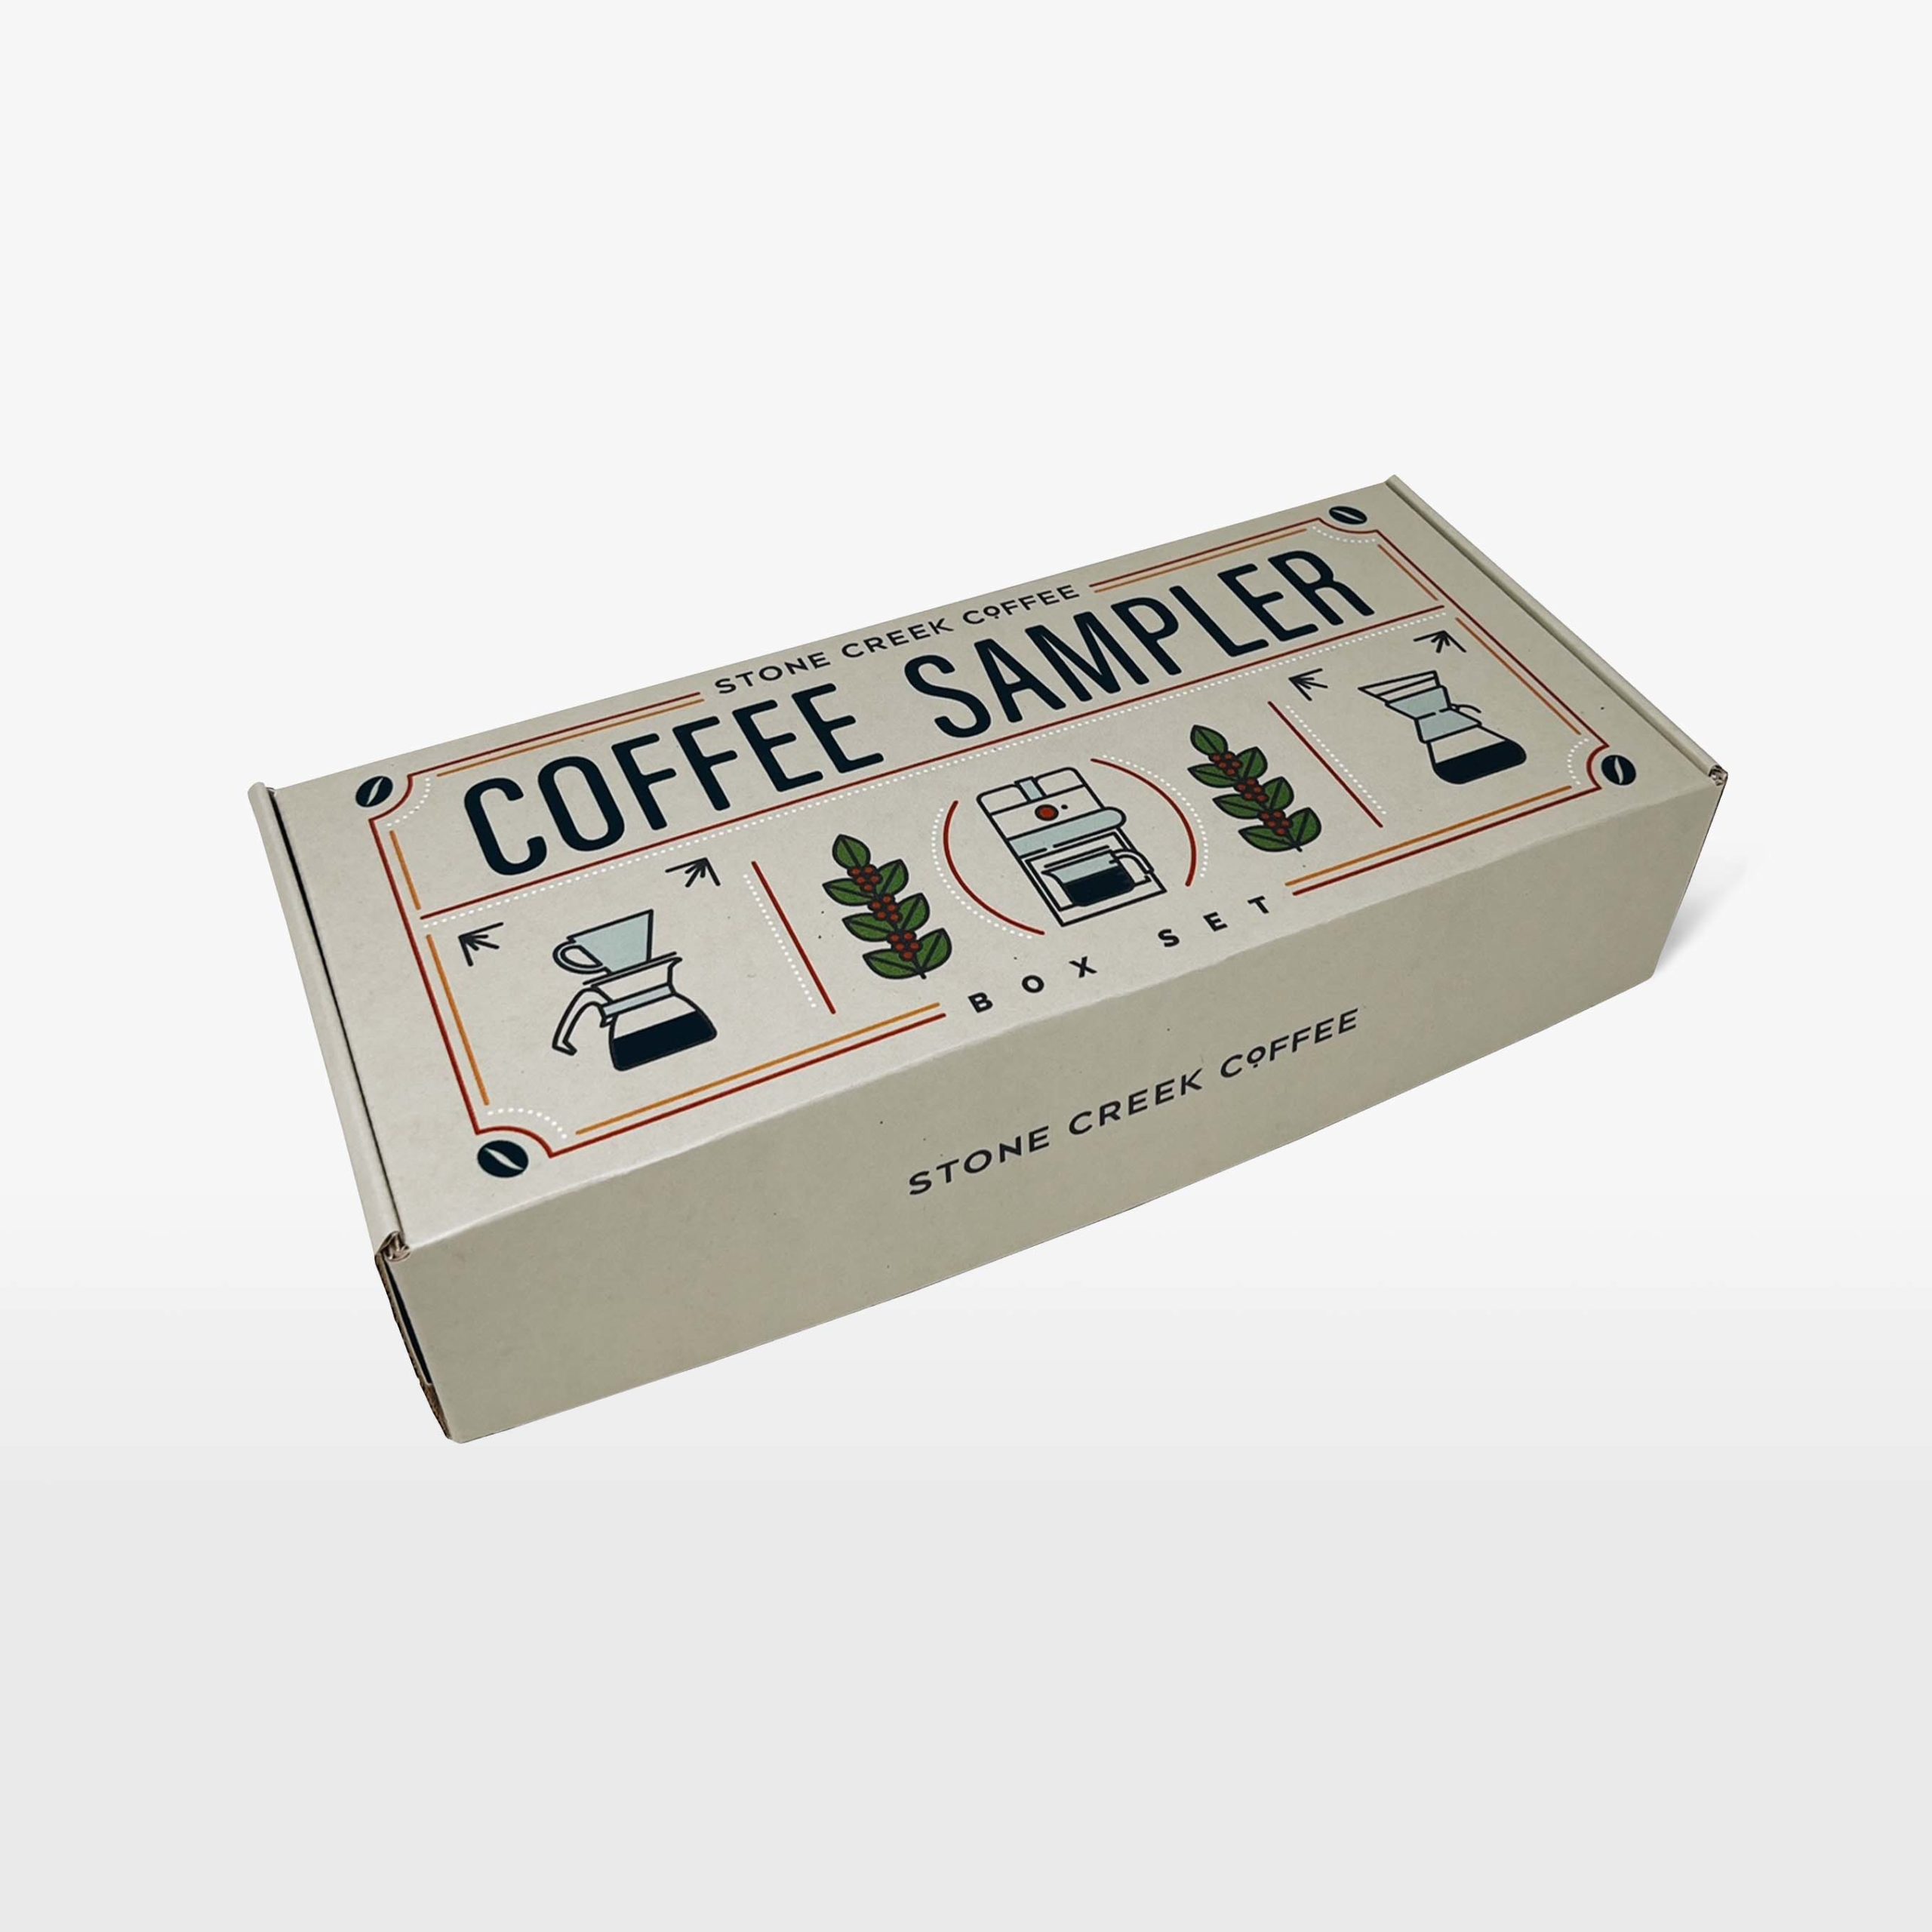 Coffee samples online